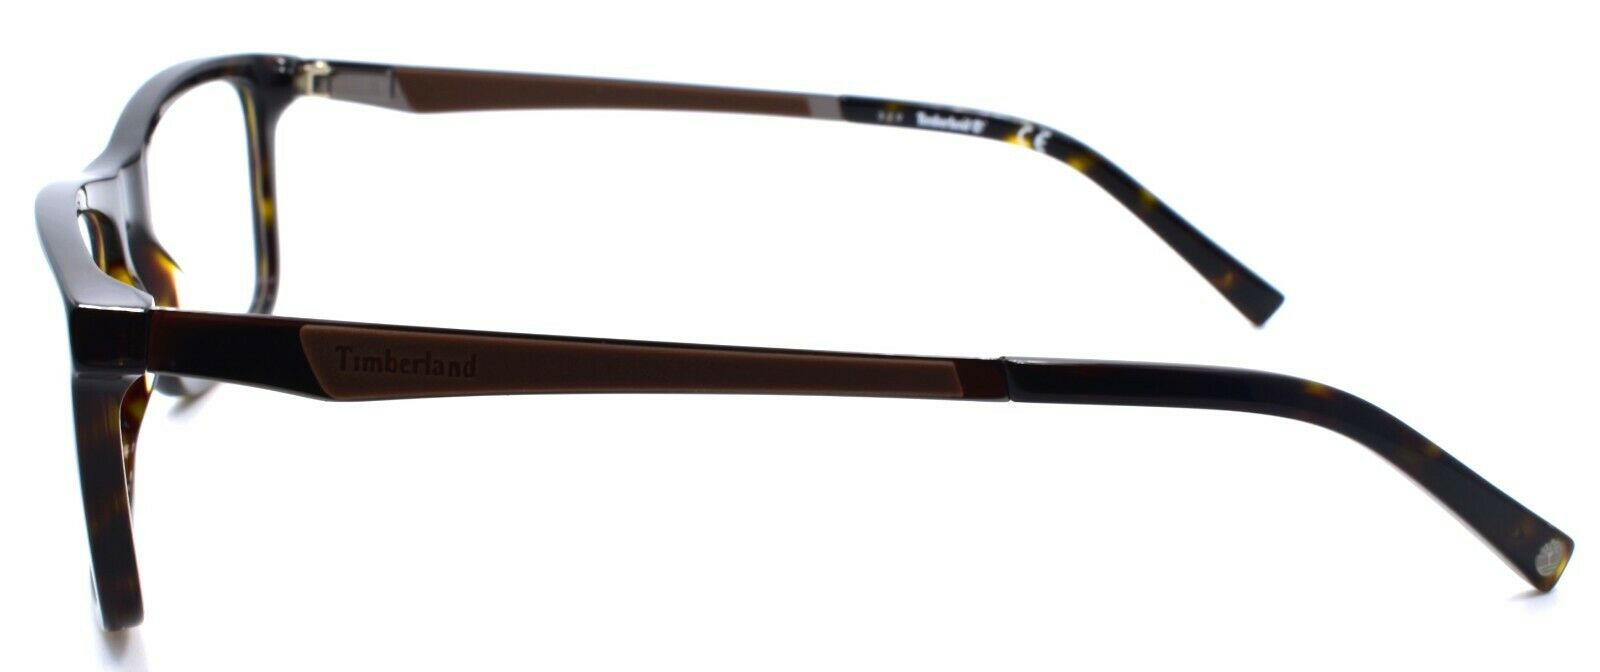 3-TIMBERLAND TB1565 056 Men's Eyeglasses Frames 53-17-140 Dark Havana-664689884407-IKSpecs